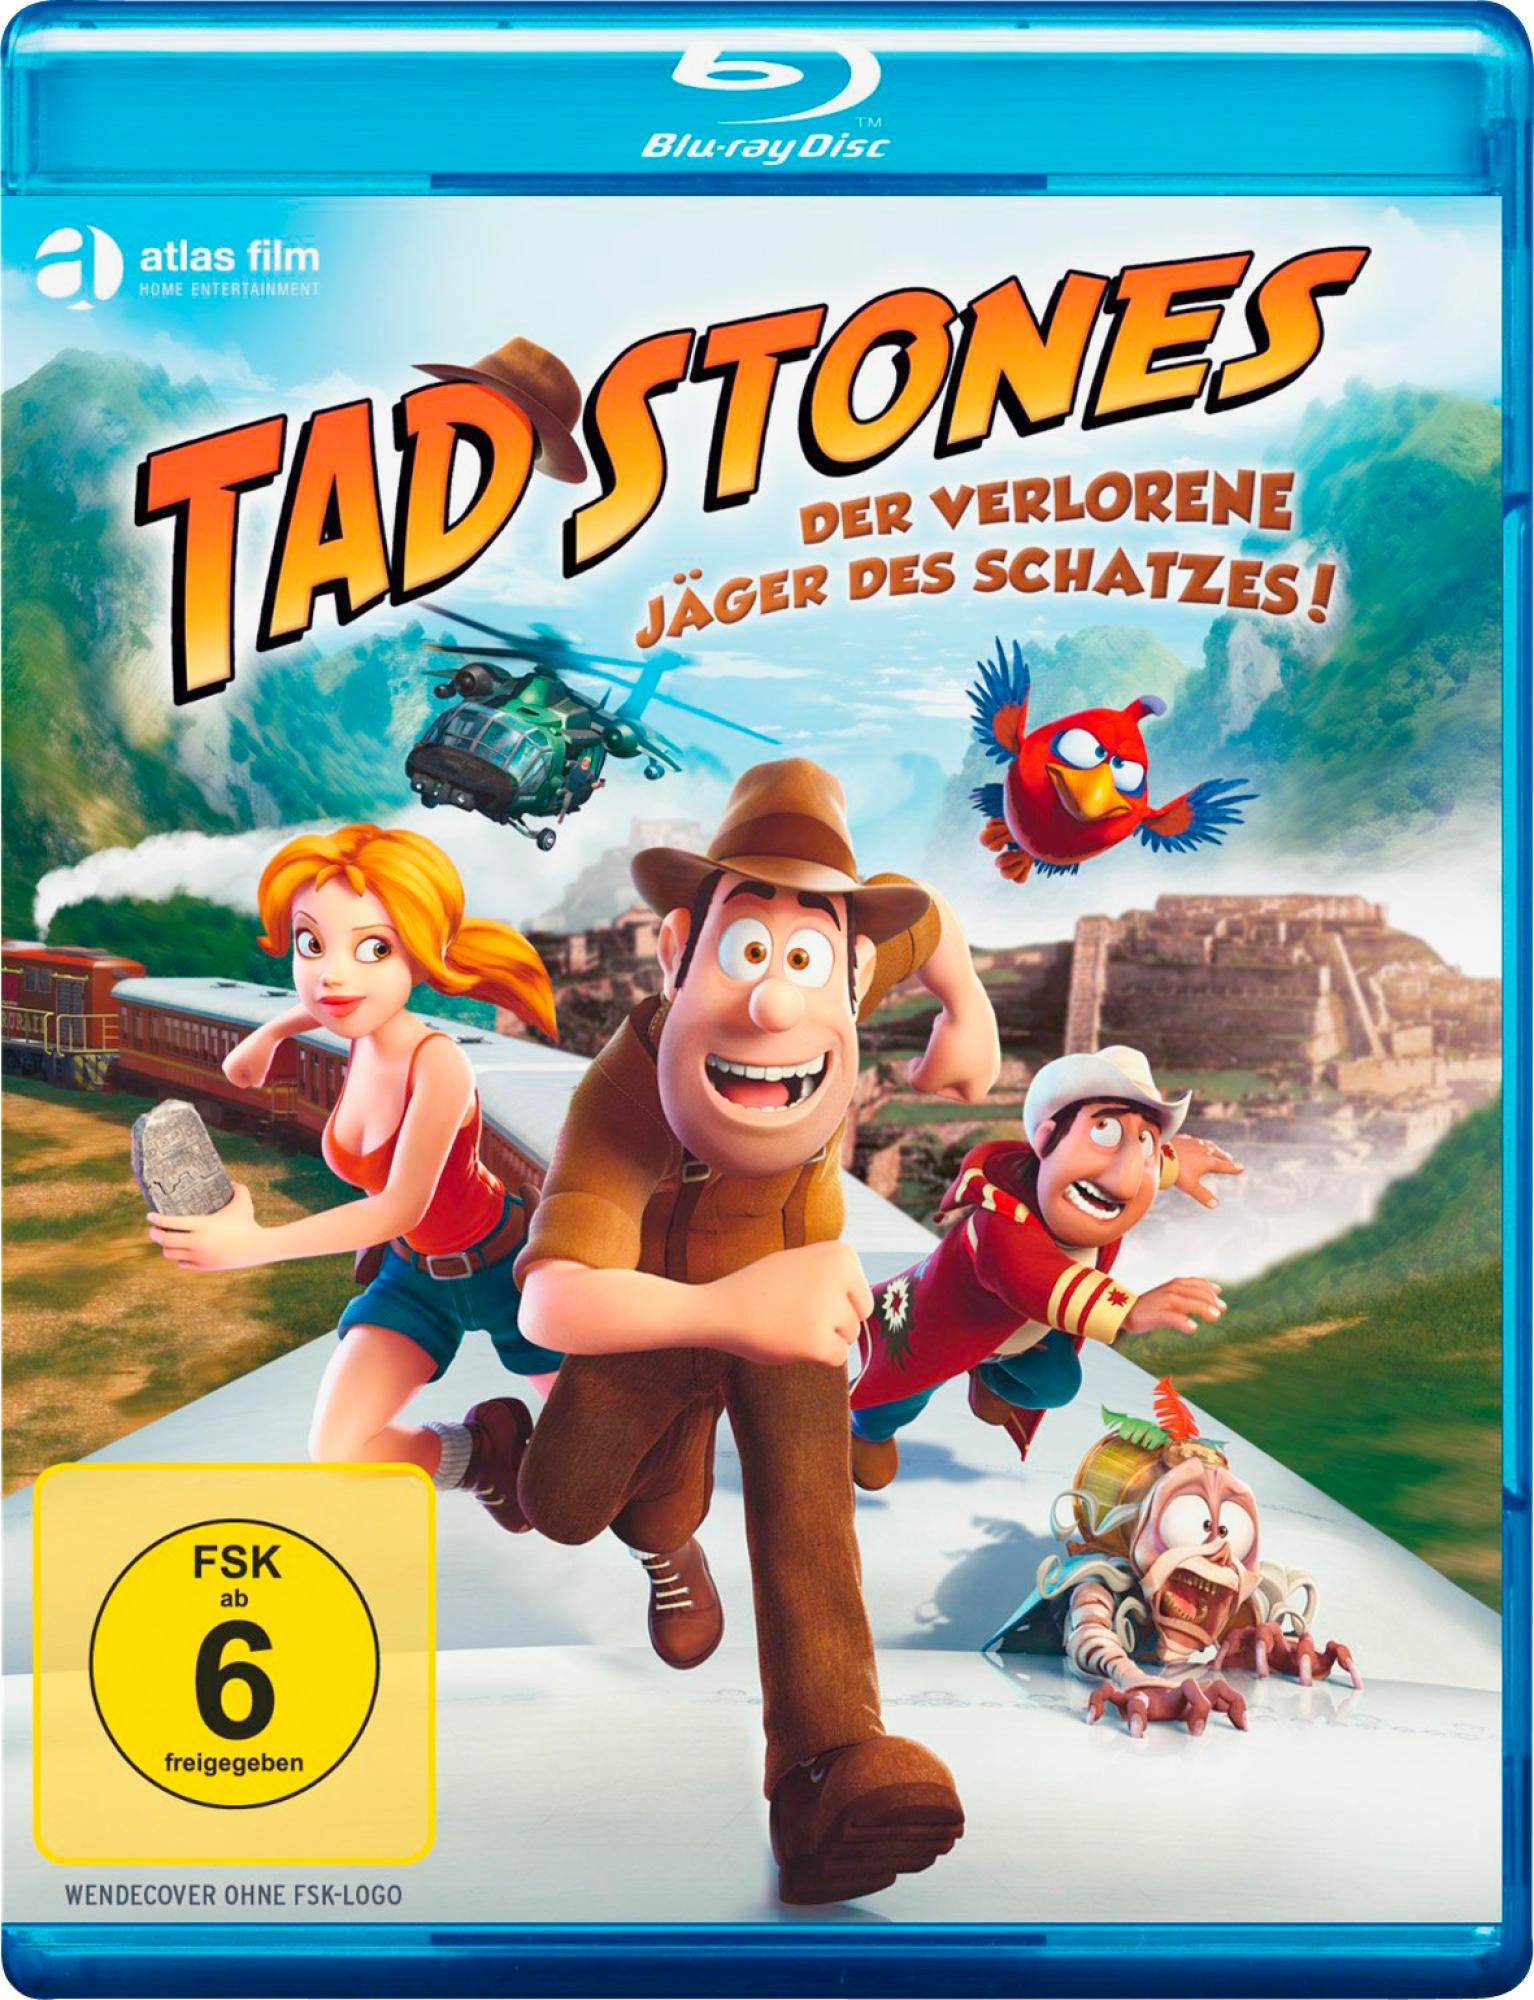 TAD STONES-DER VERLORENE JÄGER DES Blu-ray SCHATZES